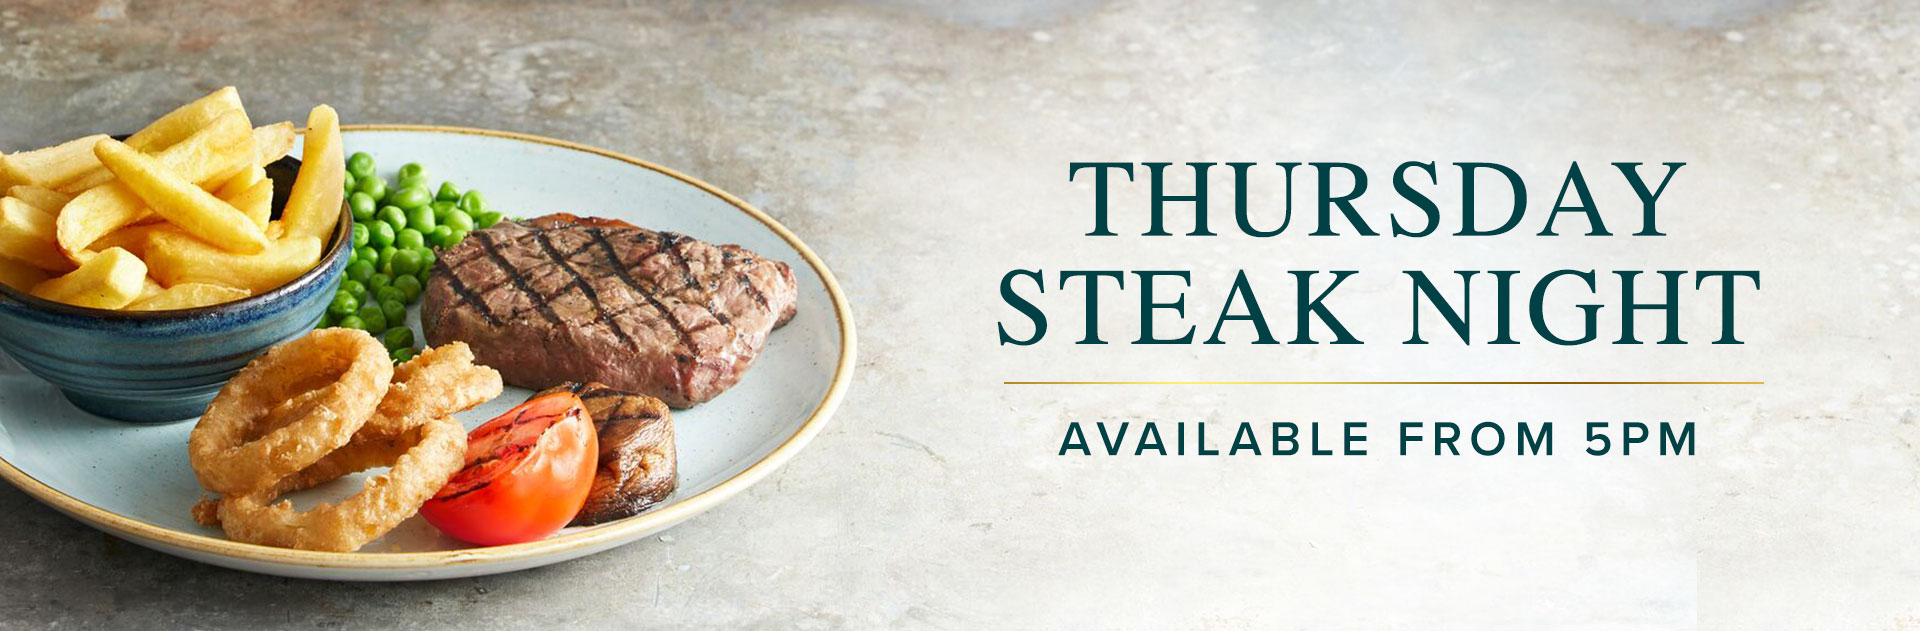 Thursday Steak Night at Talbot Inn